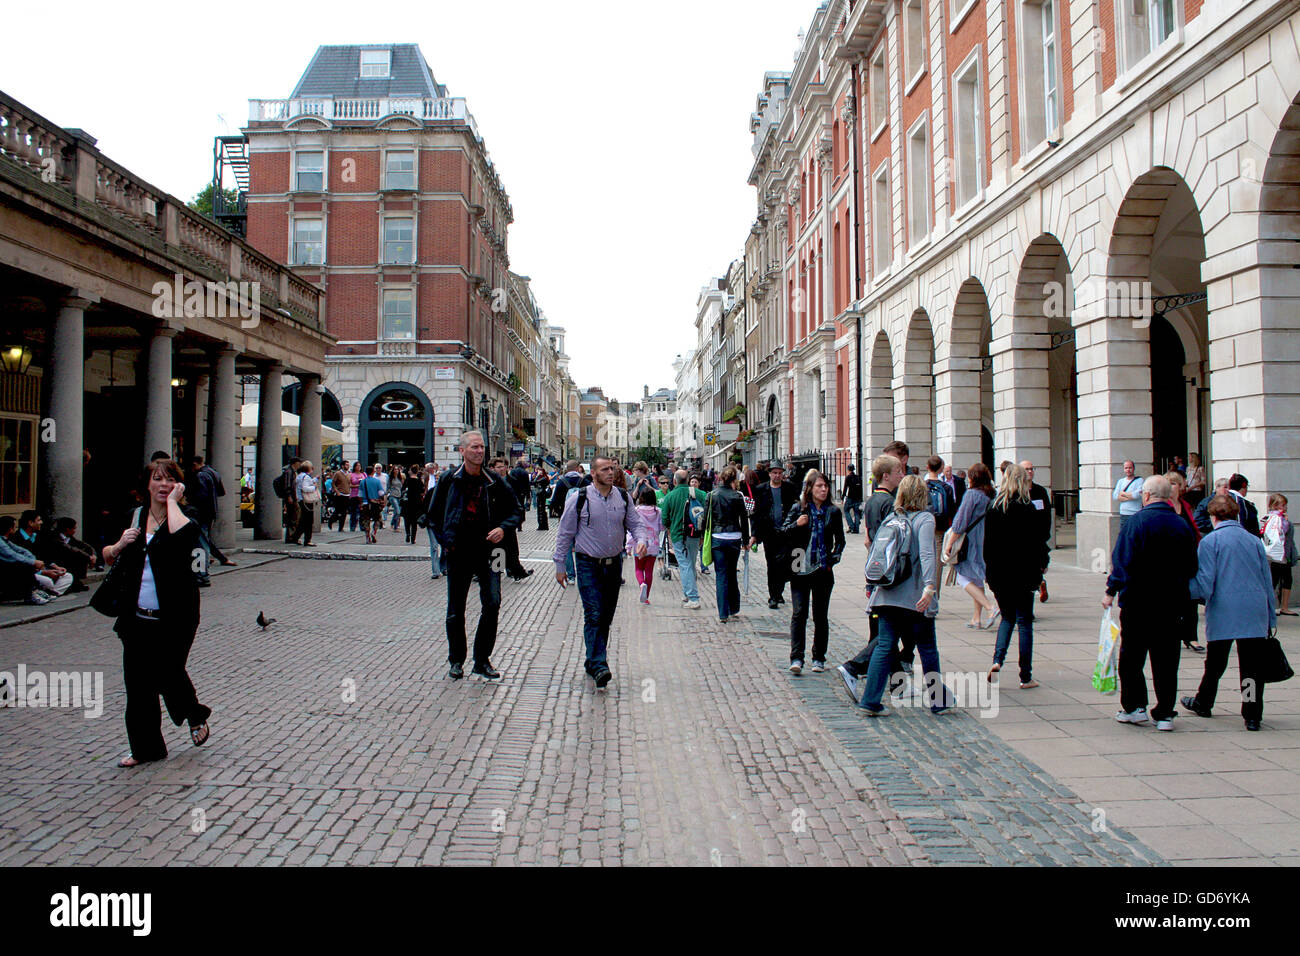 Londres, Royaume-Uni - 14 août 2010 non identifié : Troupeau de touristes à pied autour à l'extérieur de Covent Garden Banque D'Images